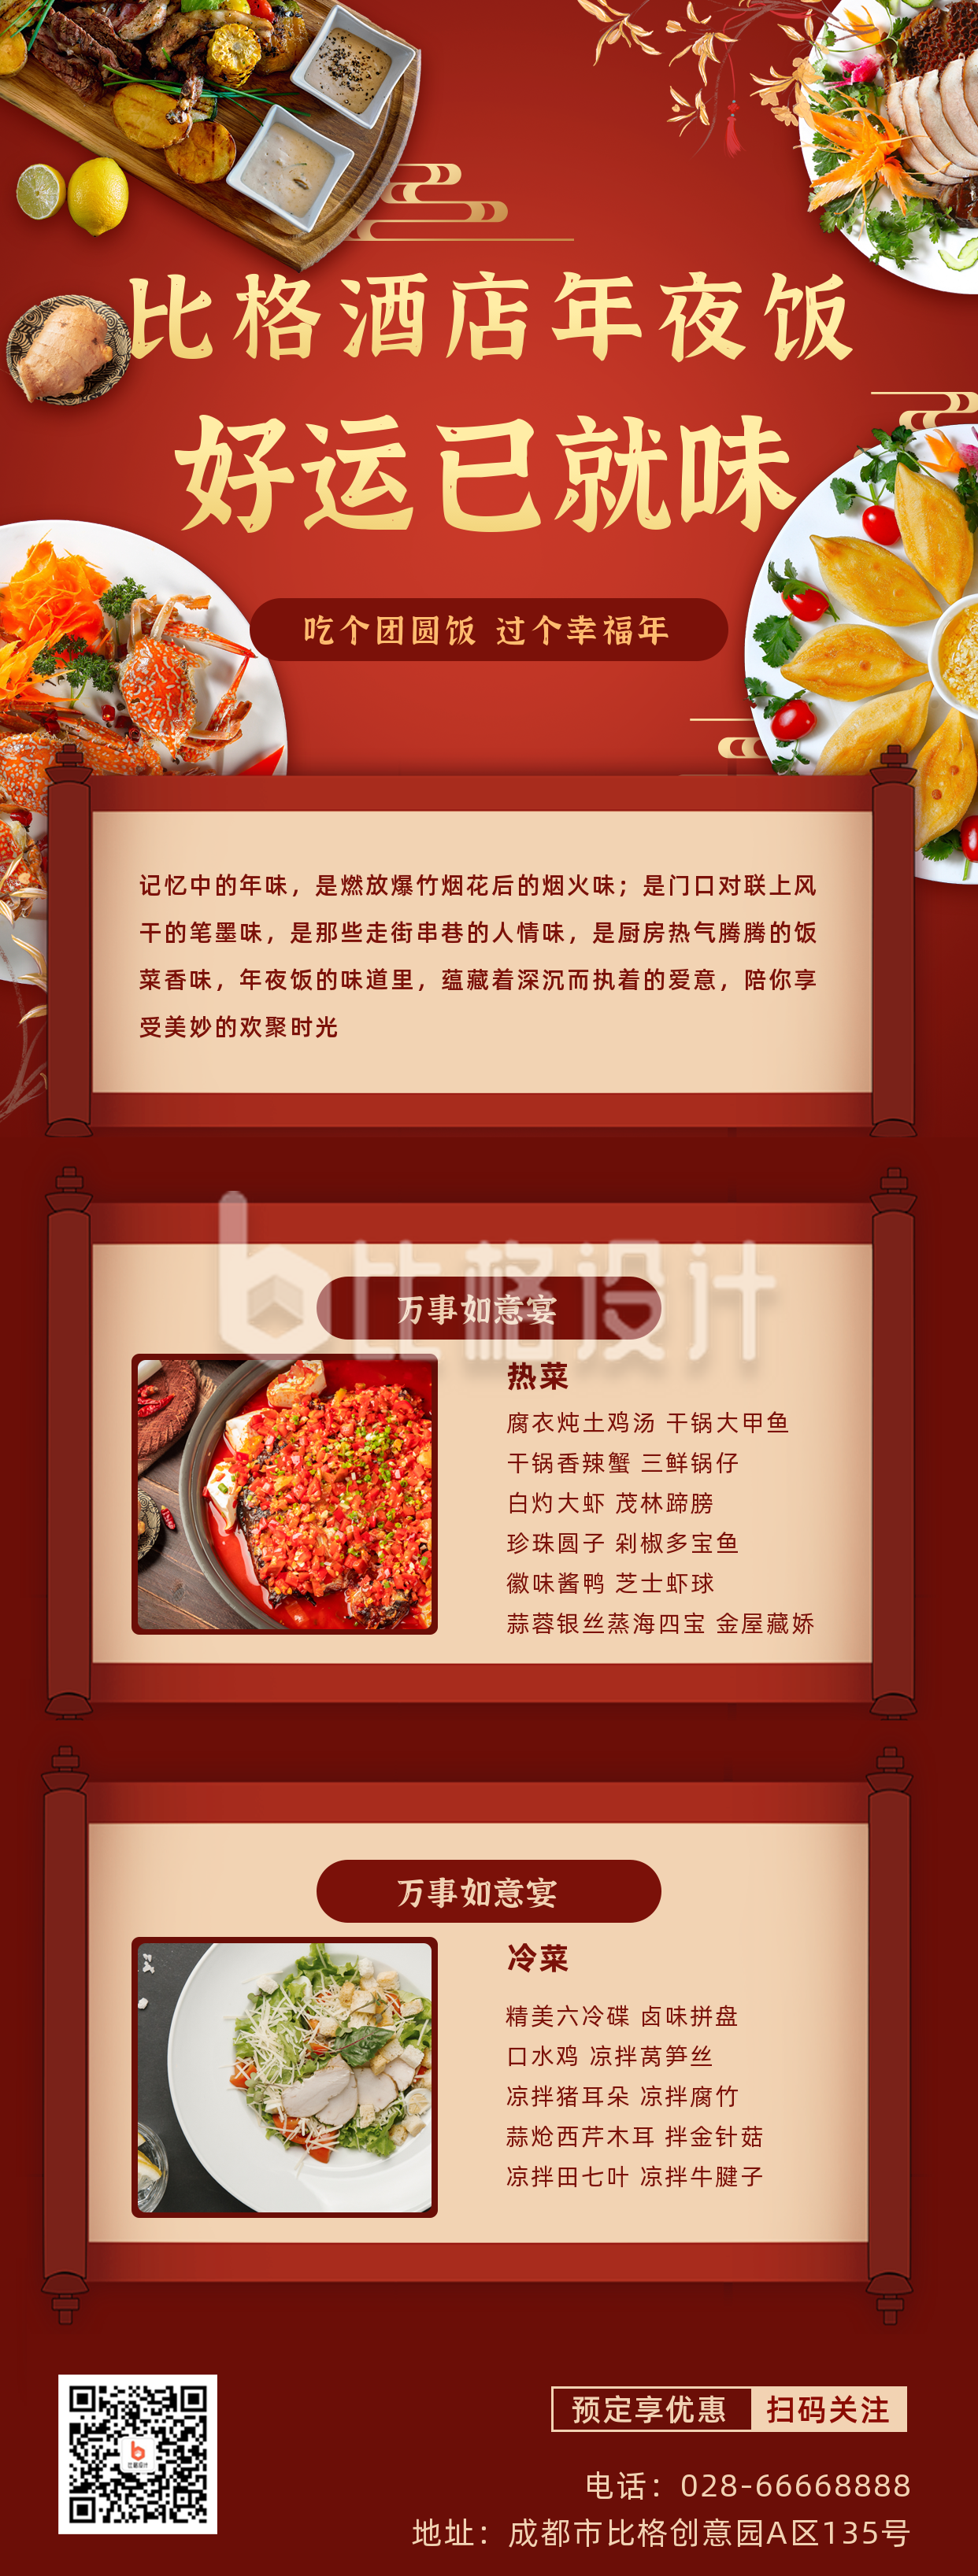 春节年夜饭预定菜单餐饮长图海报